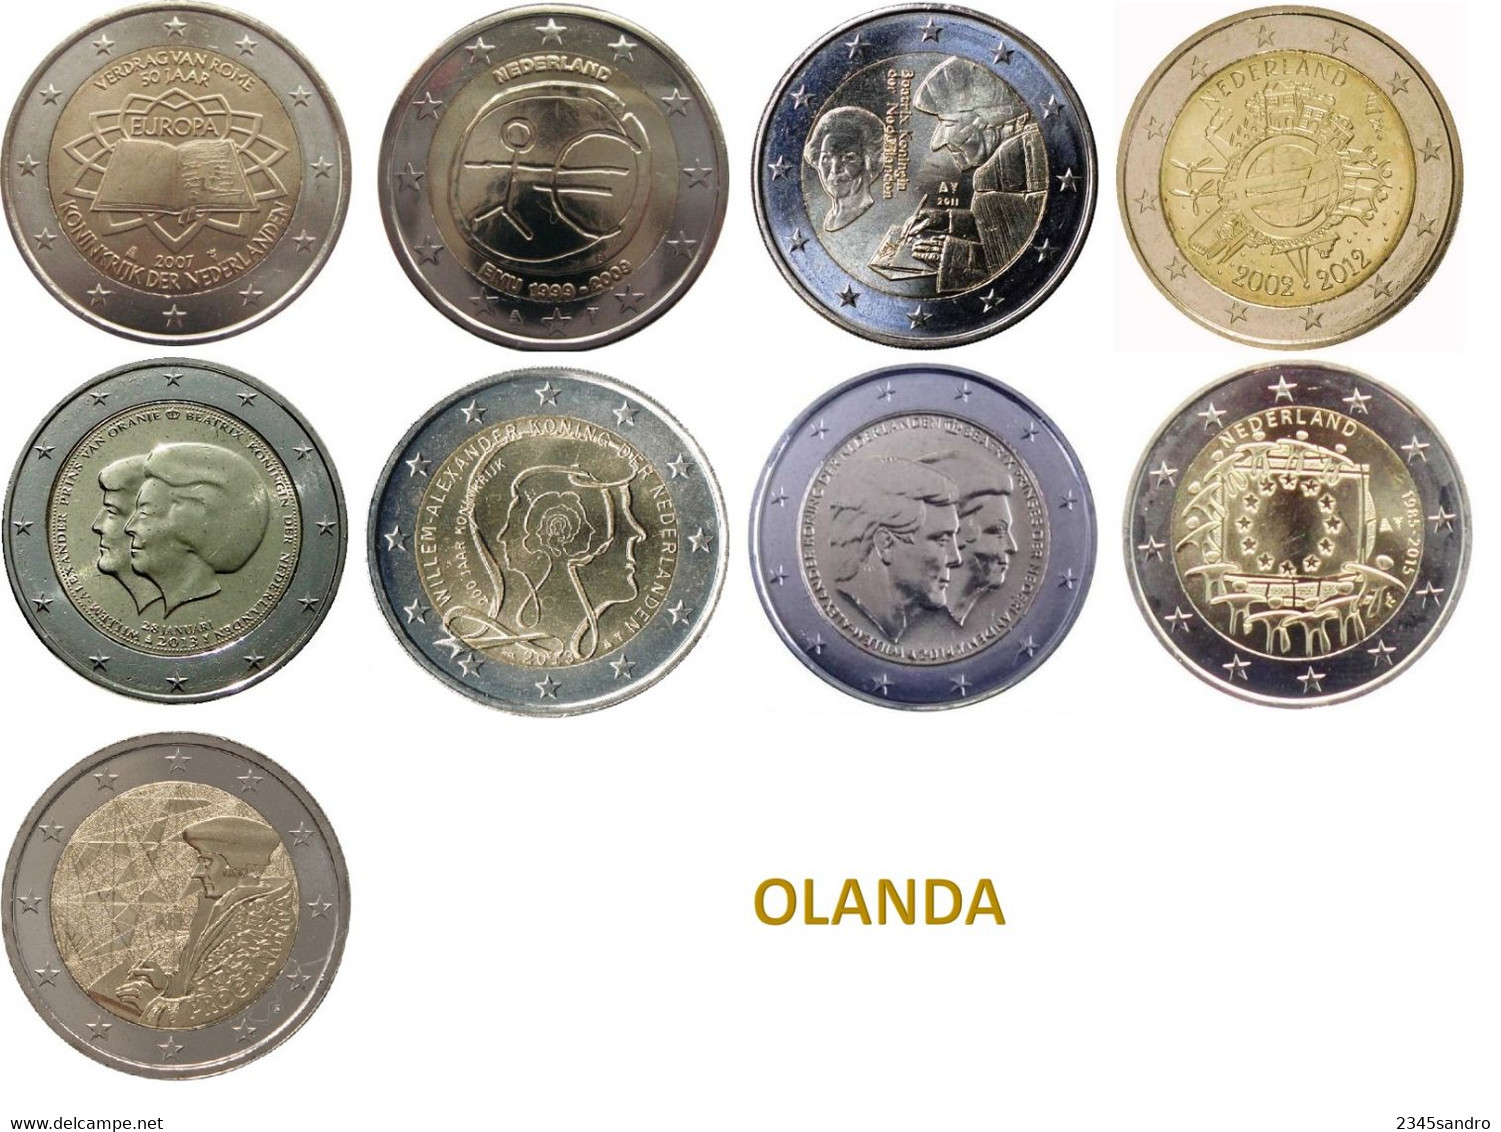 OLANDA COLLEZIONE COMPLETA 2 € EURO COMMEMORATIVE 2009-2022 FDC (9 MONETE) - Colecciones